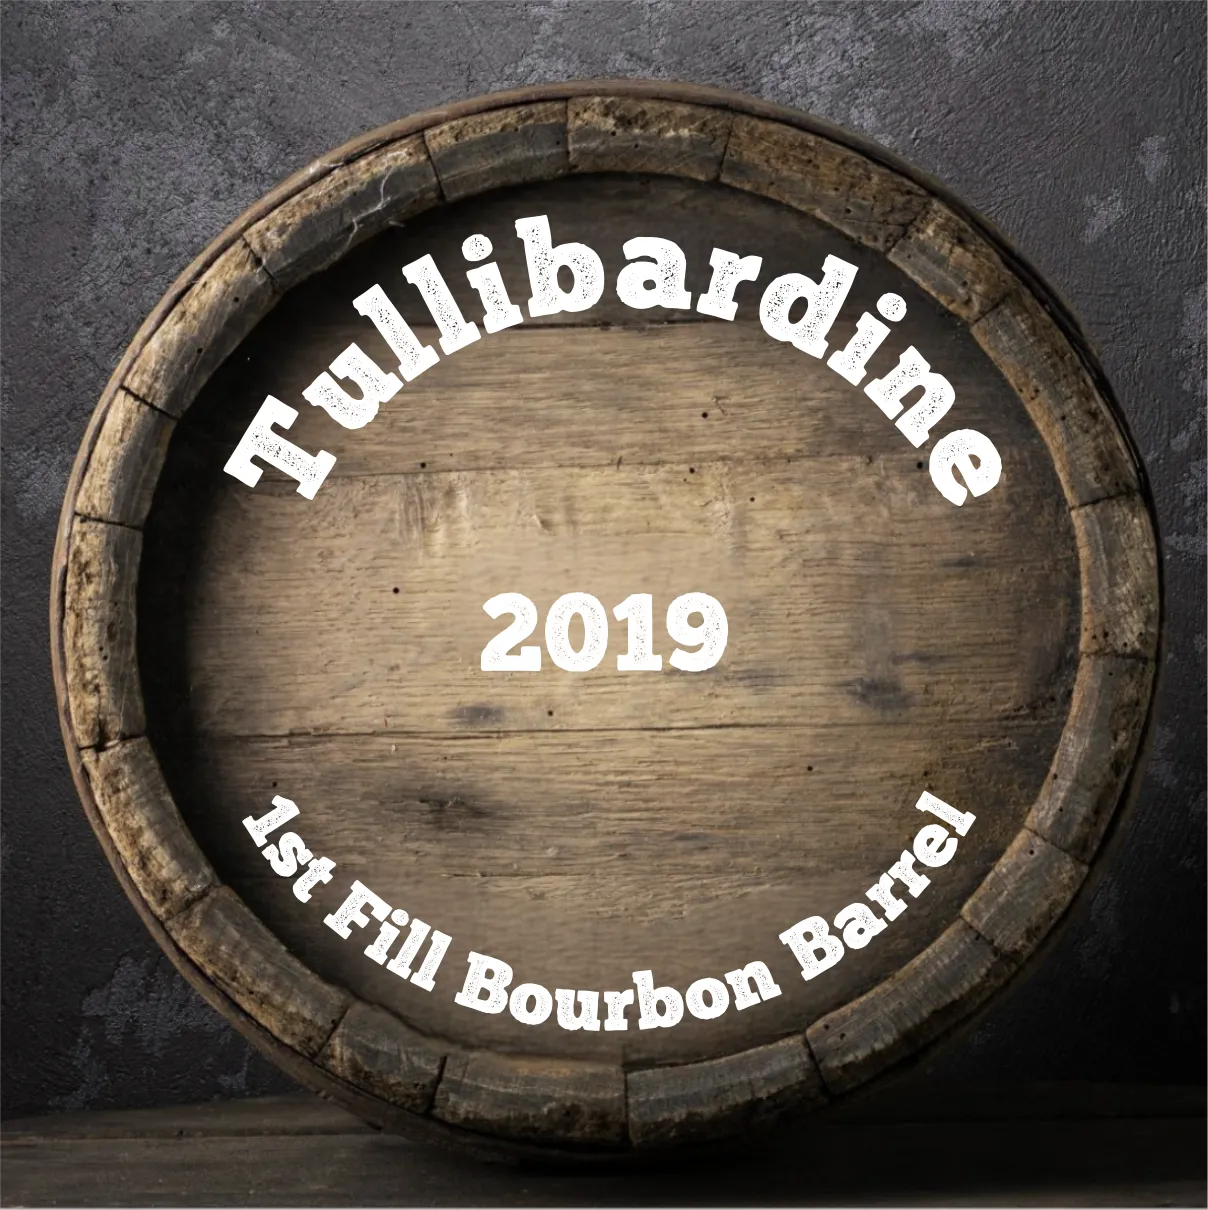 Tullibardine 1st Fill Bourbon Barrel aged 4 years